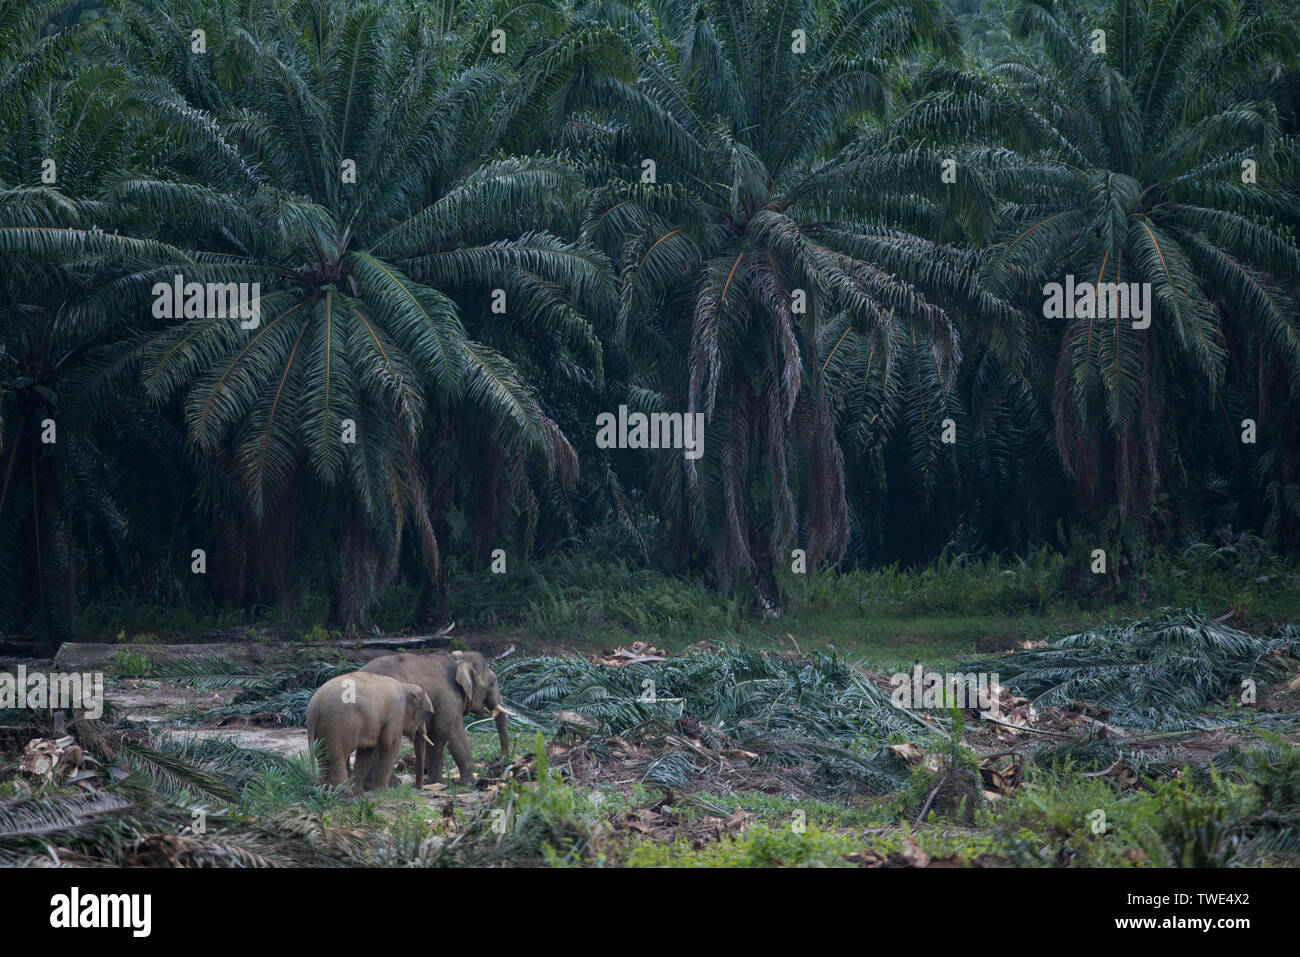 L'Éléphant de Bornéo, Elephas maximus borneensis, dans la plantation de palmiers à huile, près de Tawau, Sabah, Bornéo, Malaisie Orientale. Banque D'Images